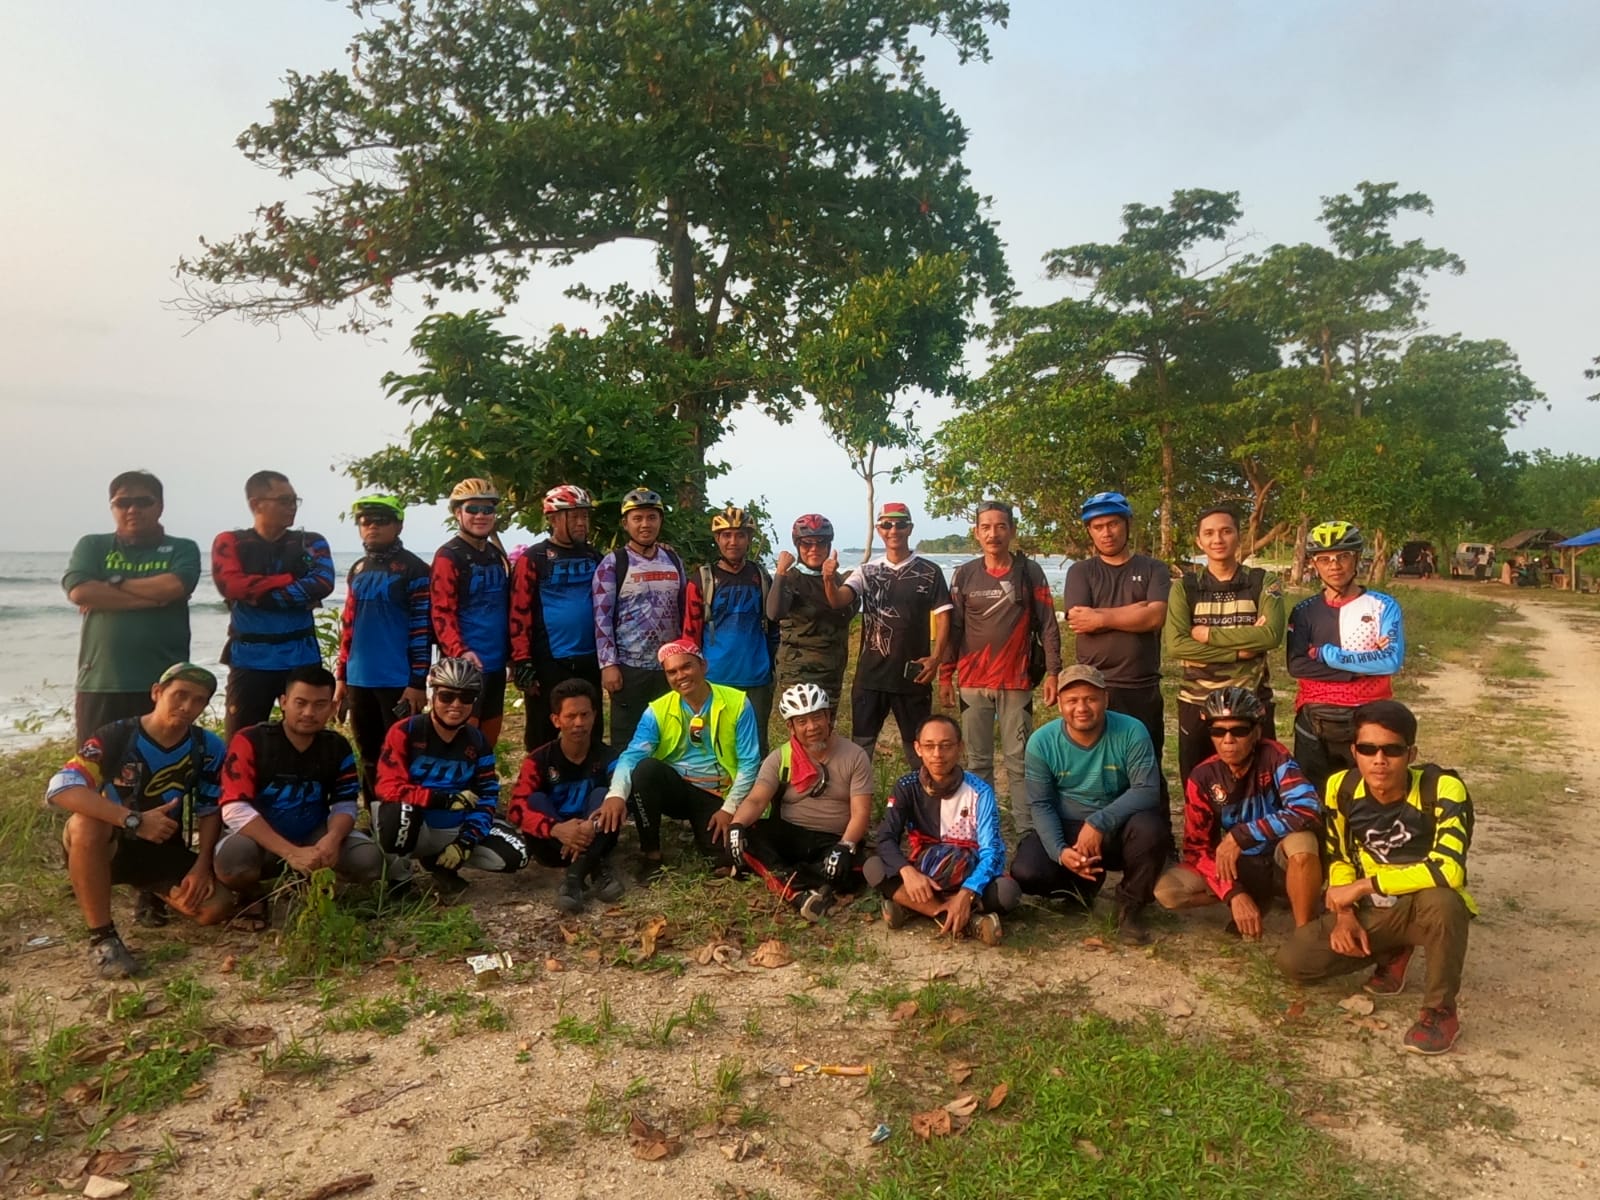 Demi Trek Memuaskan, Komunitas Sepeda Tangerang Gowes Bareng ke Labuan